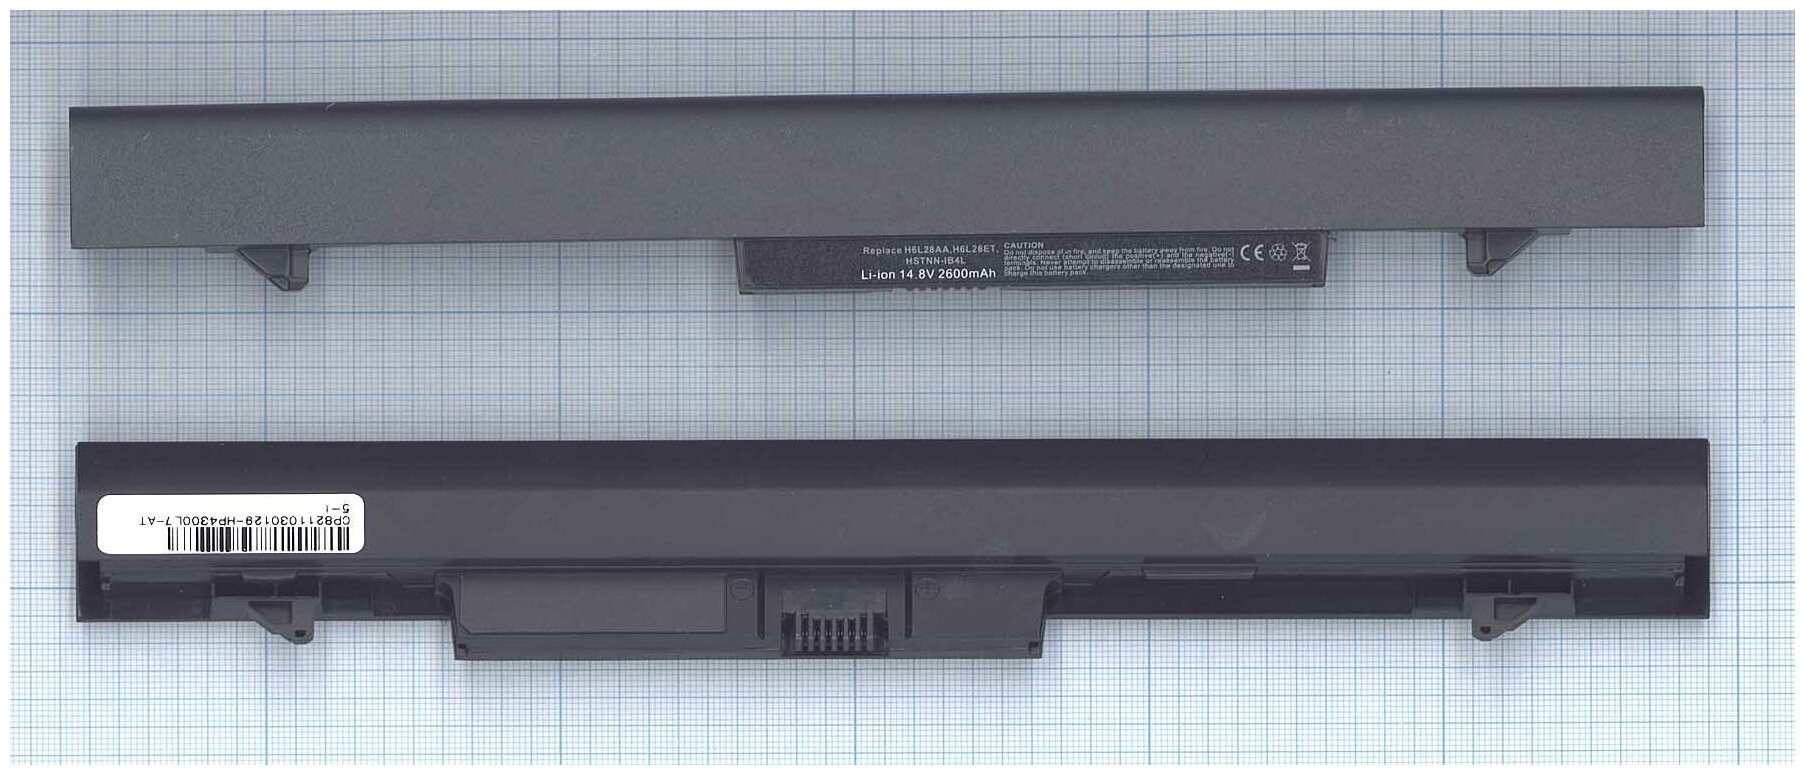 Аккумуляторная батарея для ноутбука HP ProBook 430 G1, 430 G2 (HSTNN-IB4L) (RA04) 2600mAh OEM черная